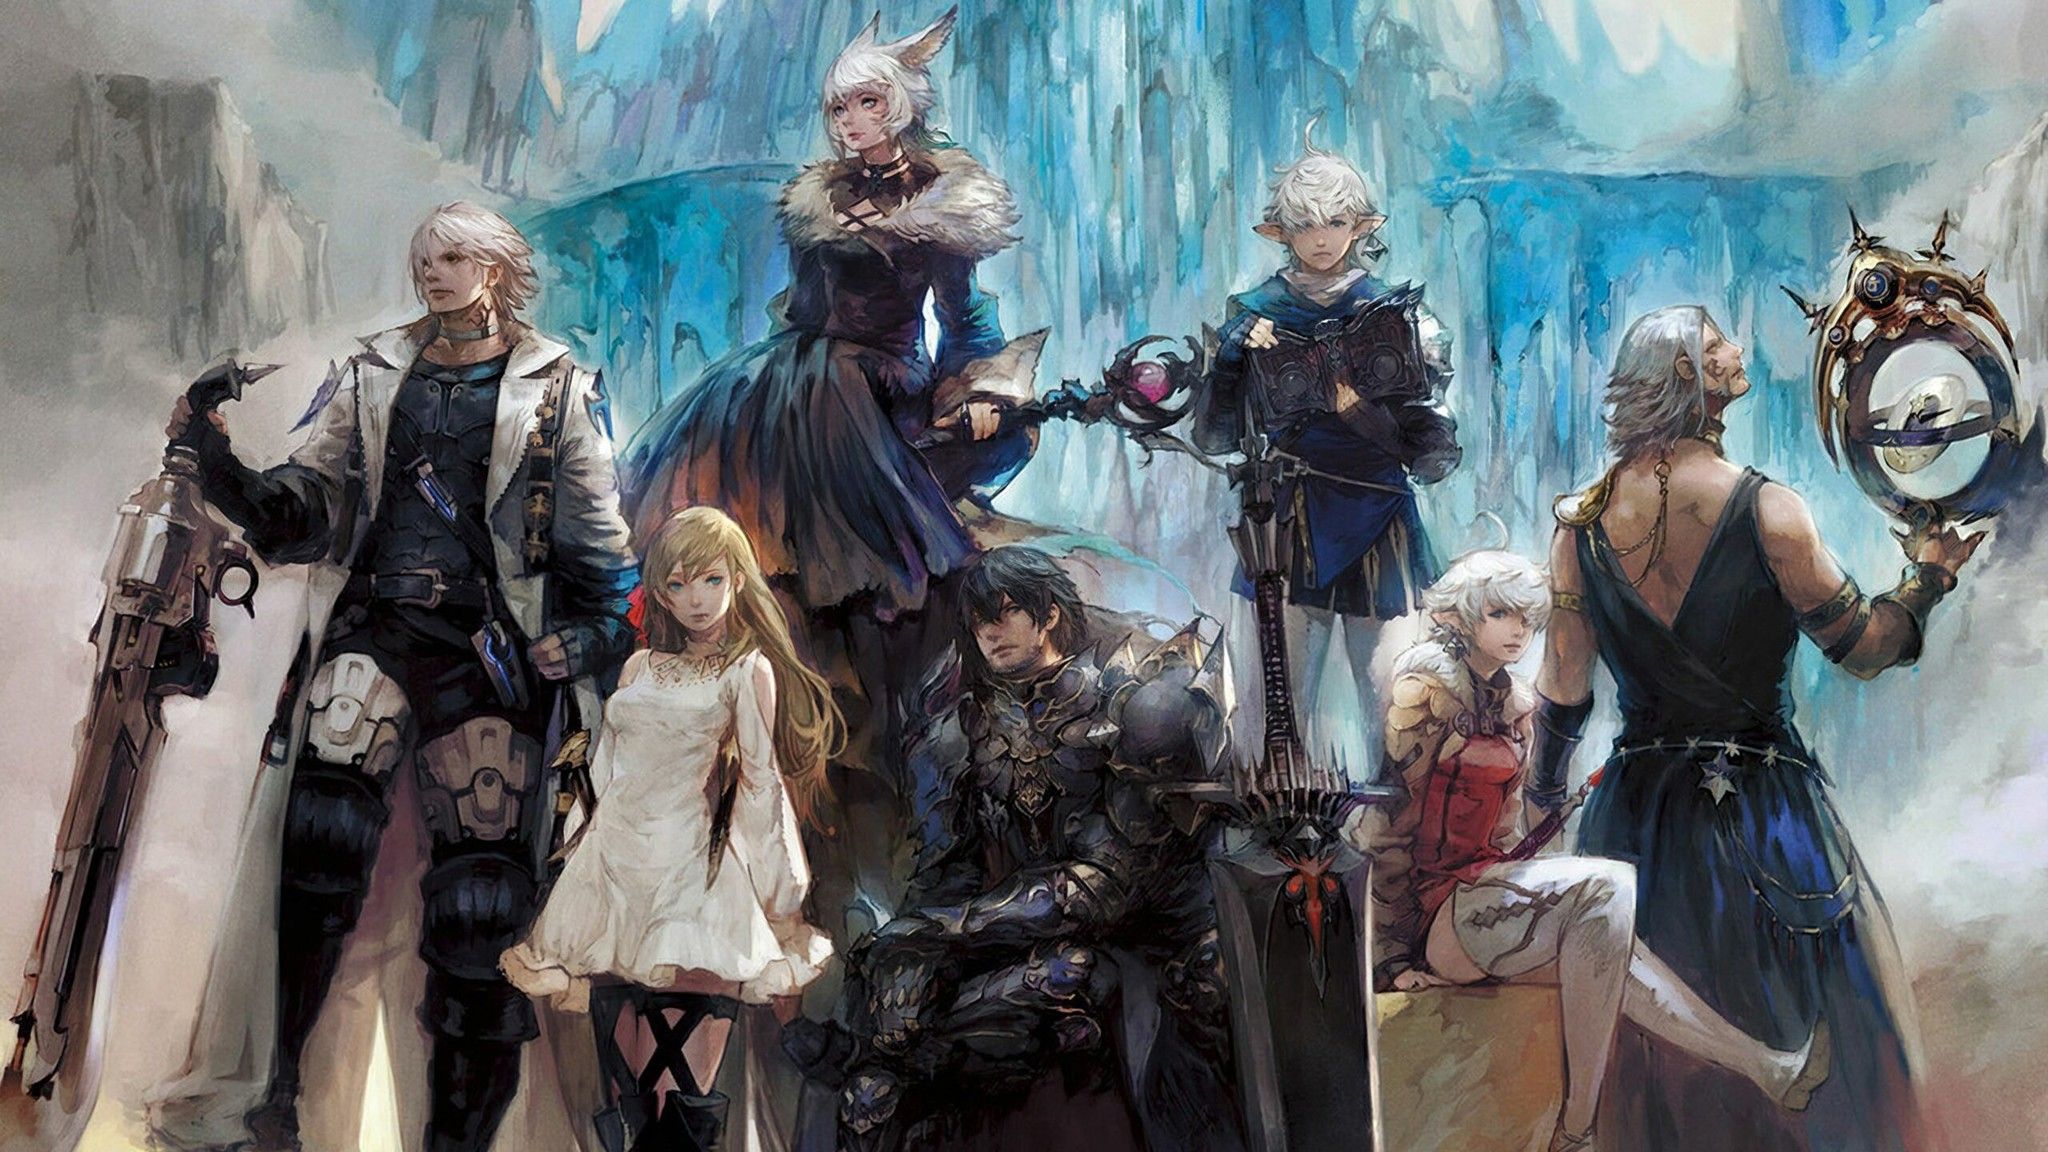 Nhà sản xuất Final Fantasy 14 yêu cầu game thủ đừng nhảy nhót đốt pháo bông trên người đối phương nữa